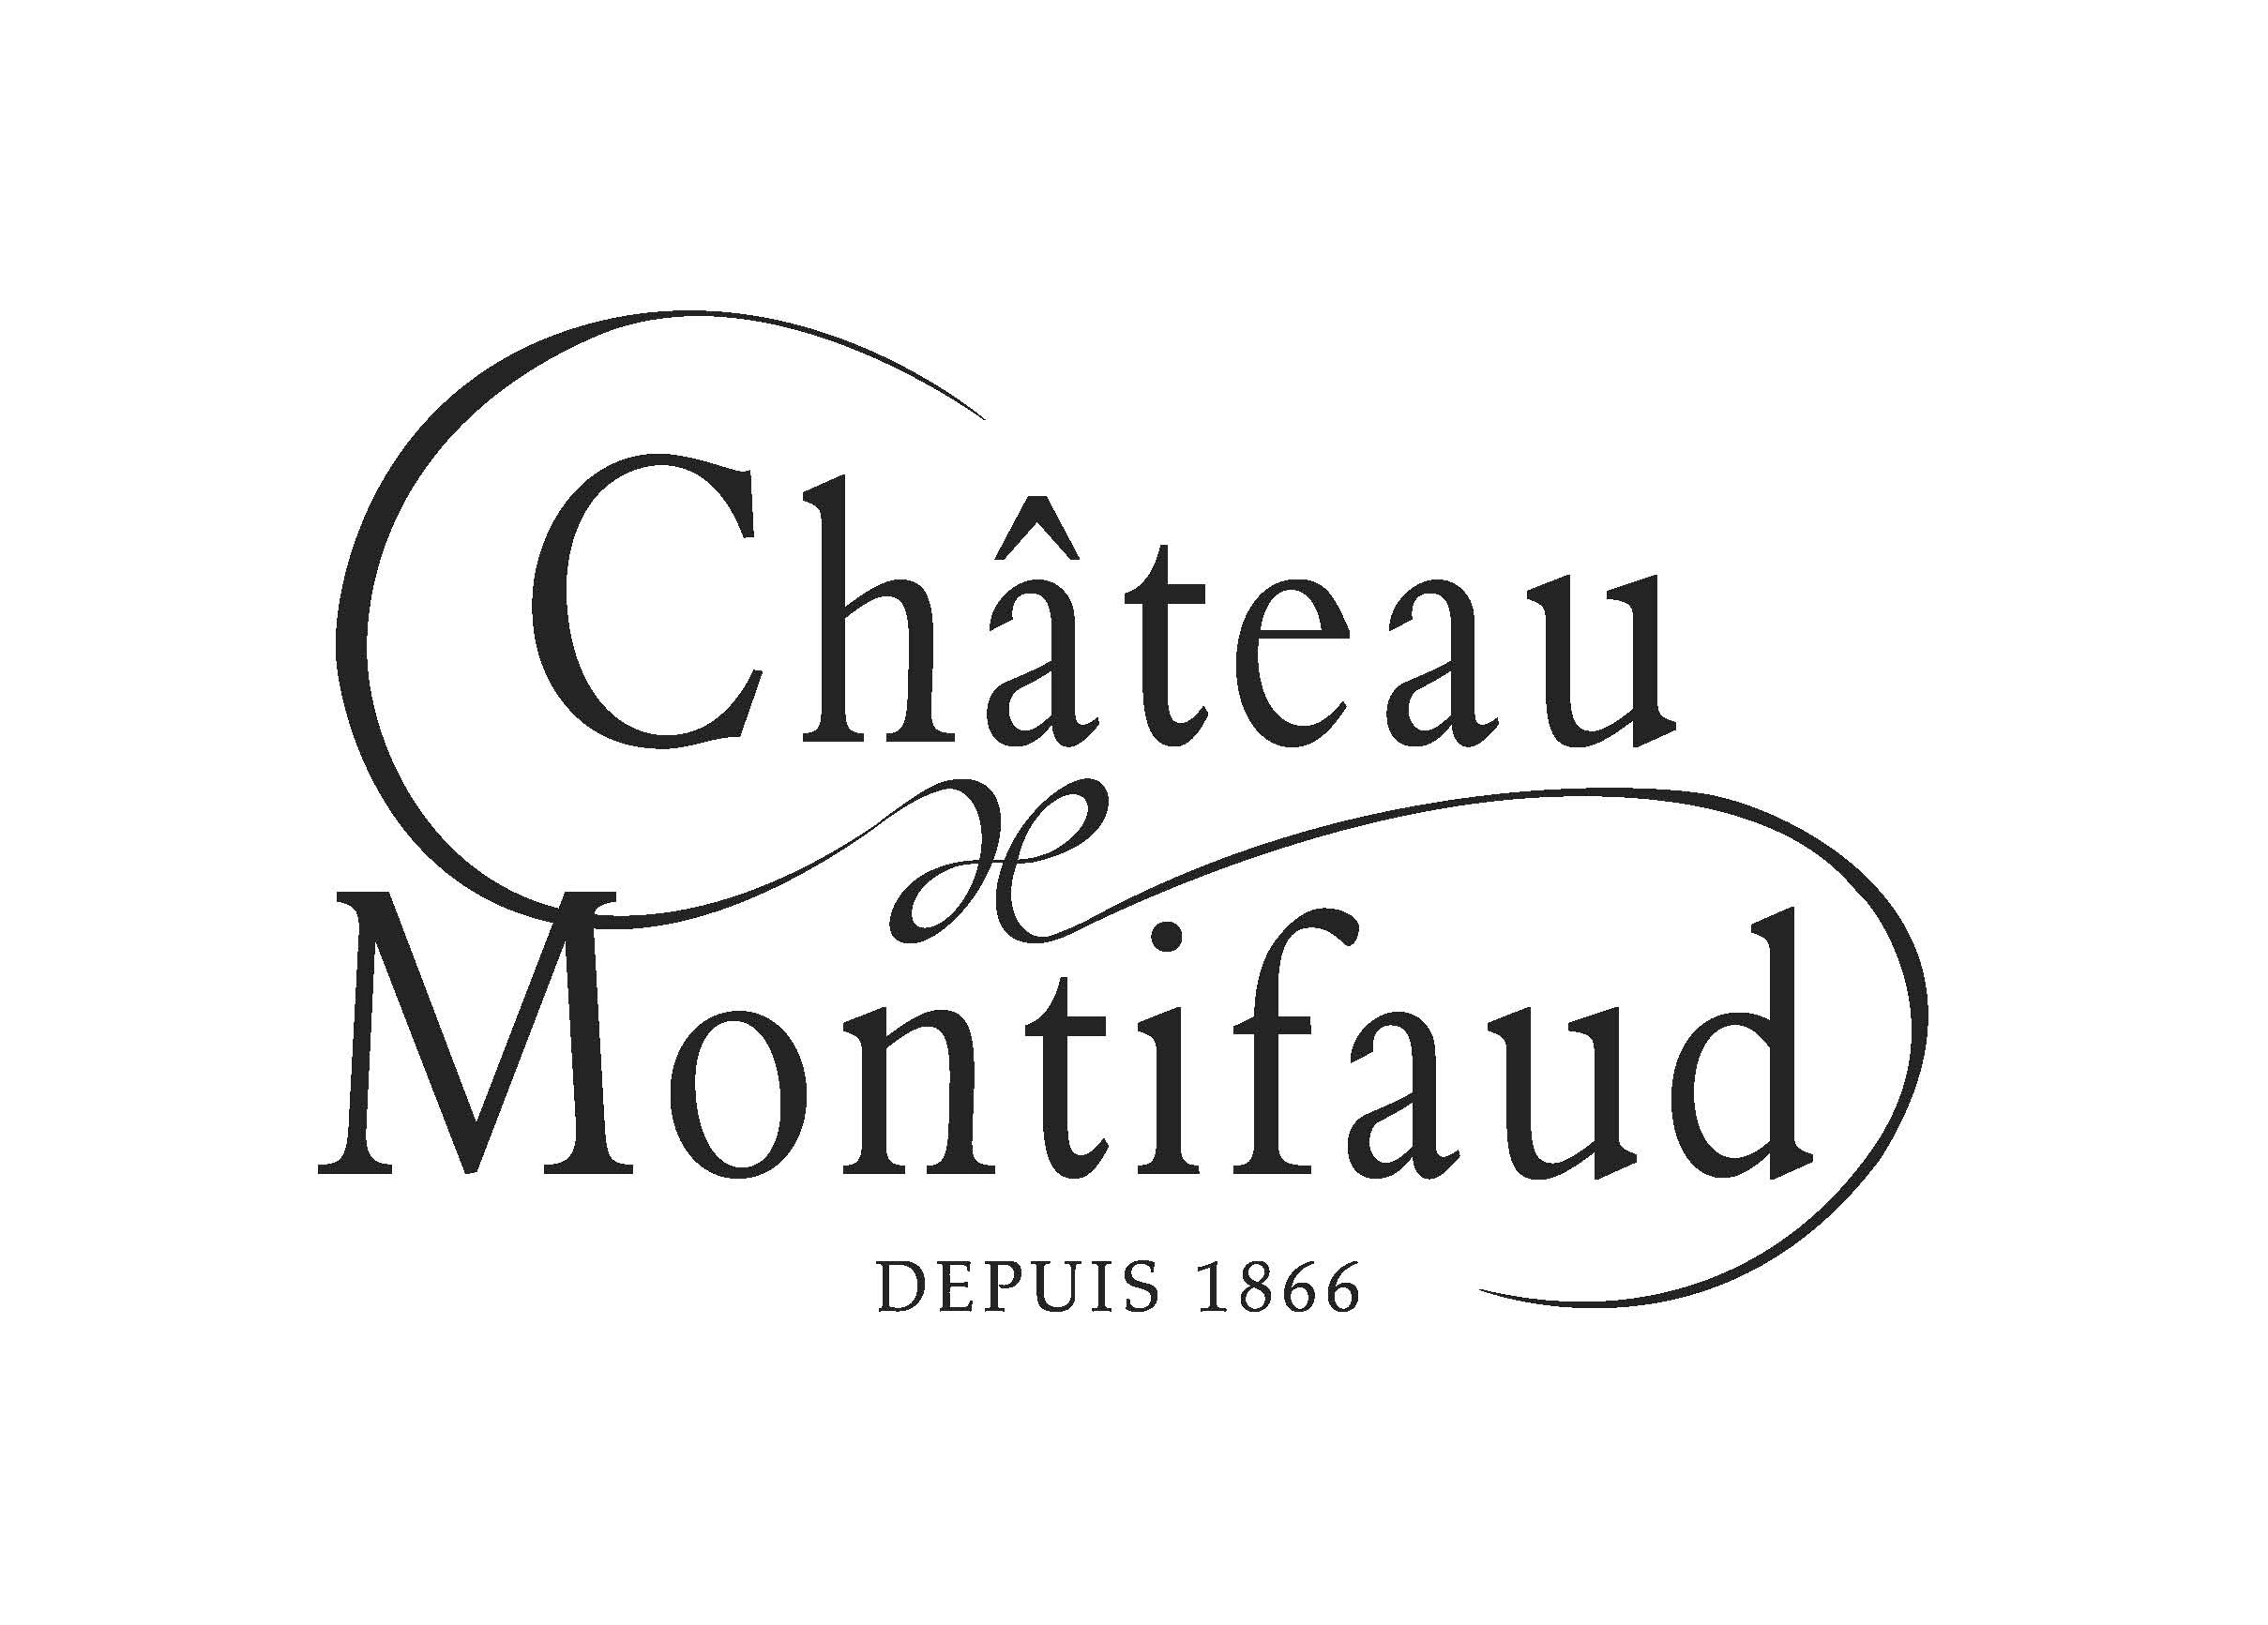 Château Montifaud